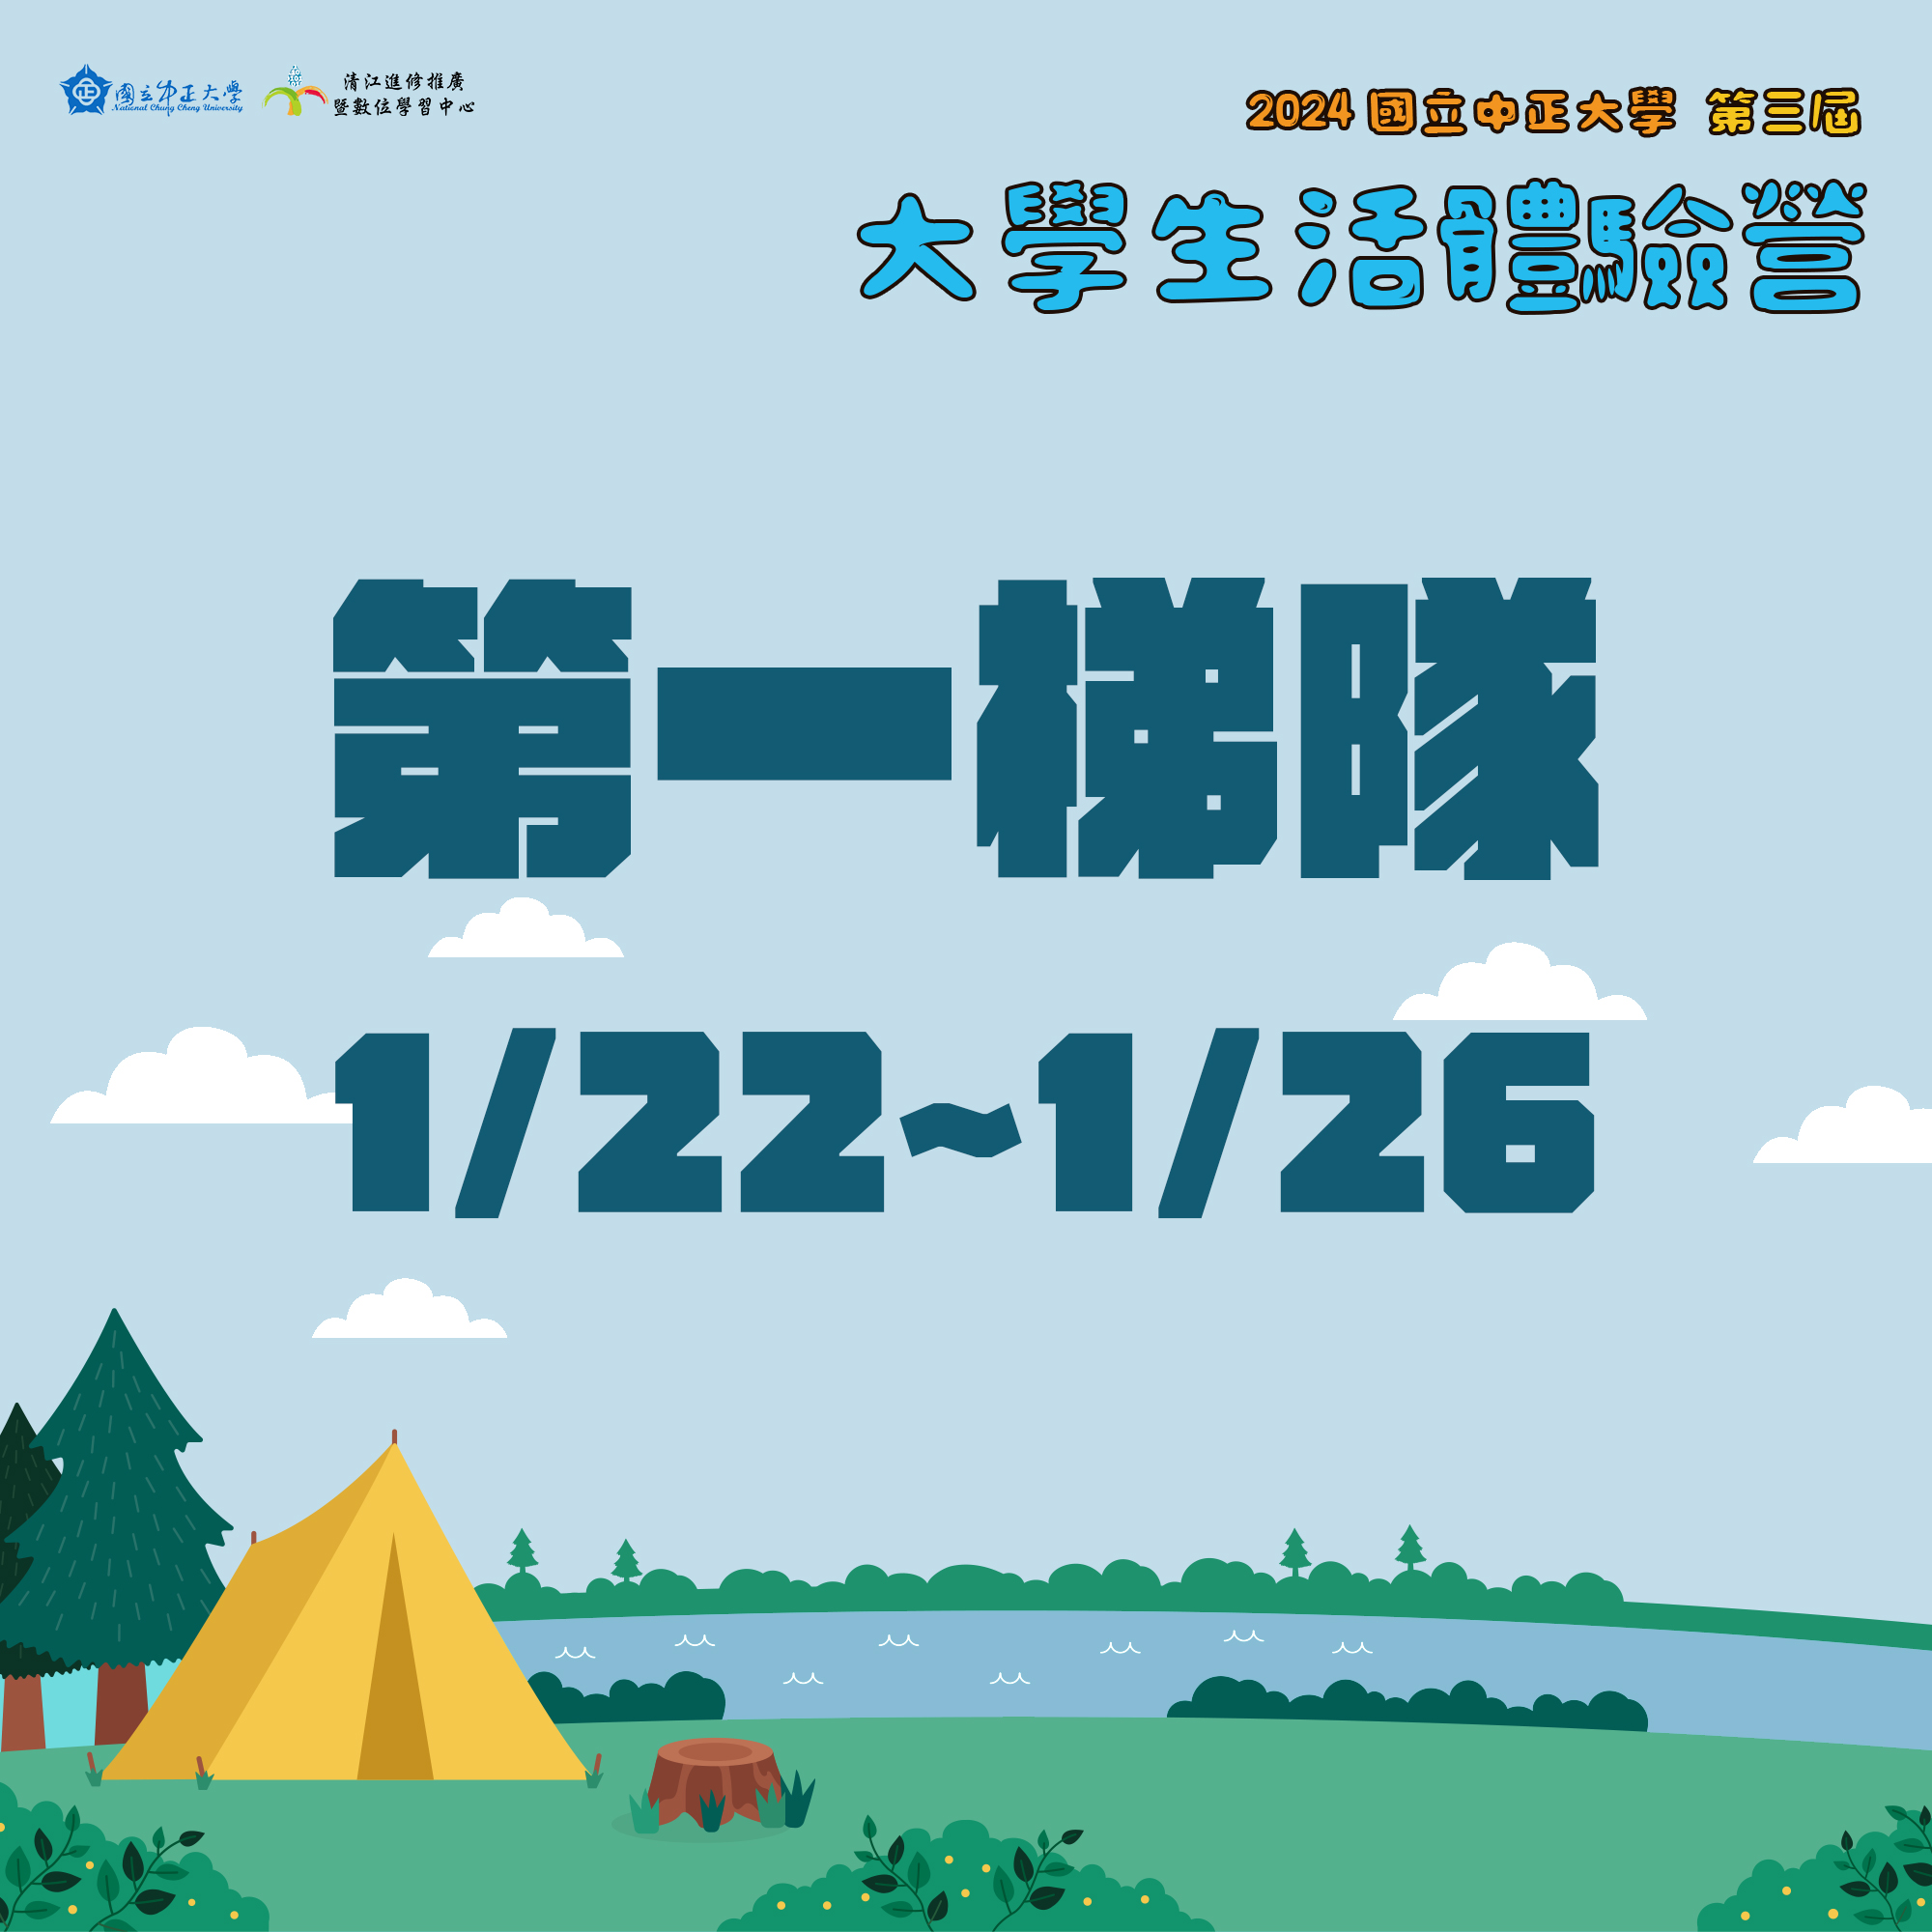 【報名截止】大學生活體驗營報名 第一梯(01/22-01/26)